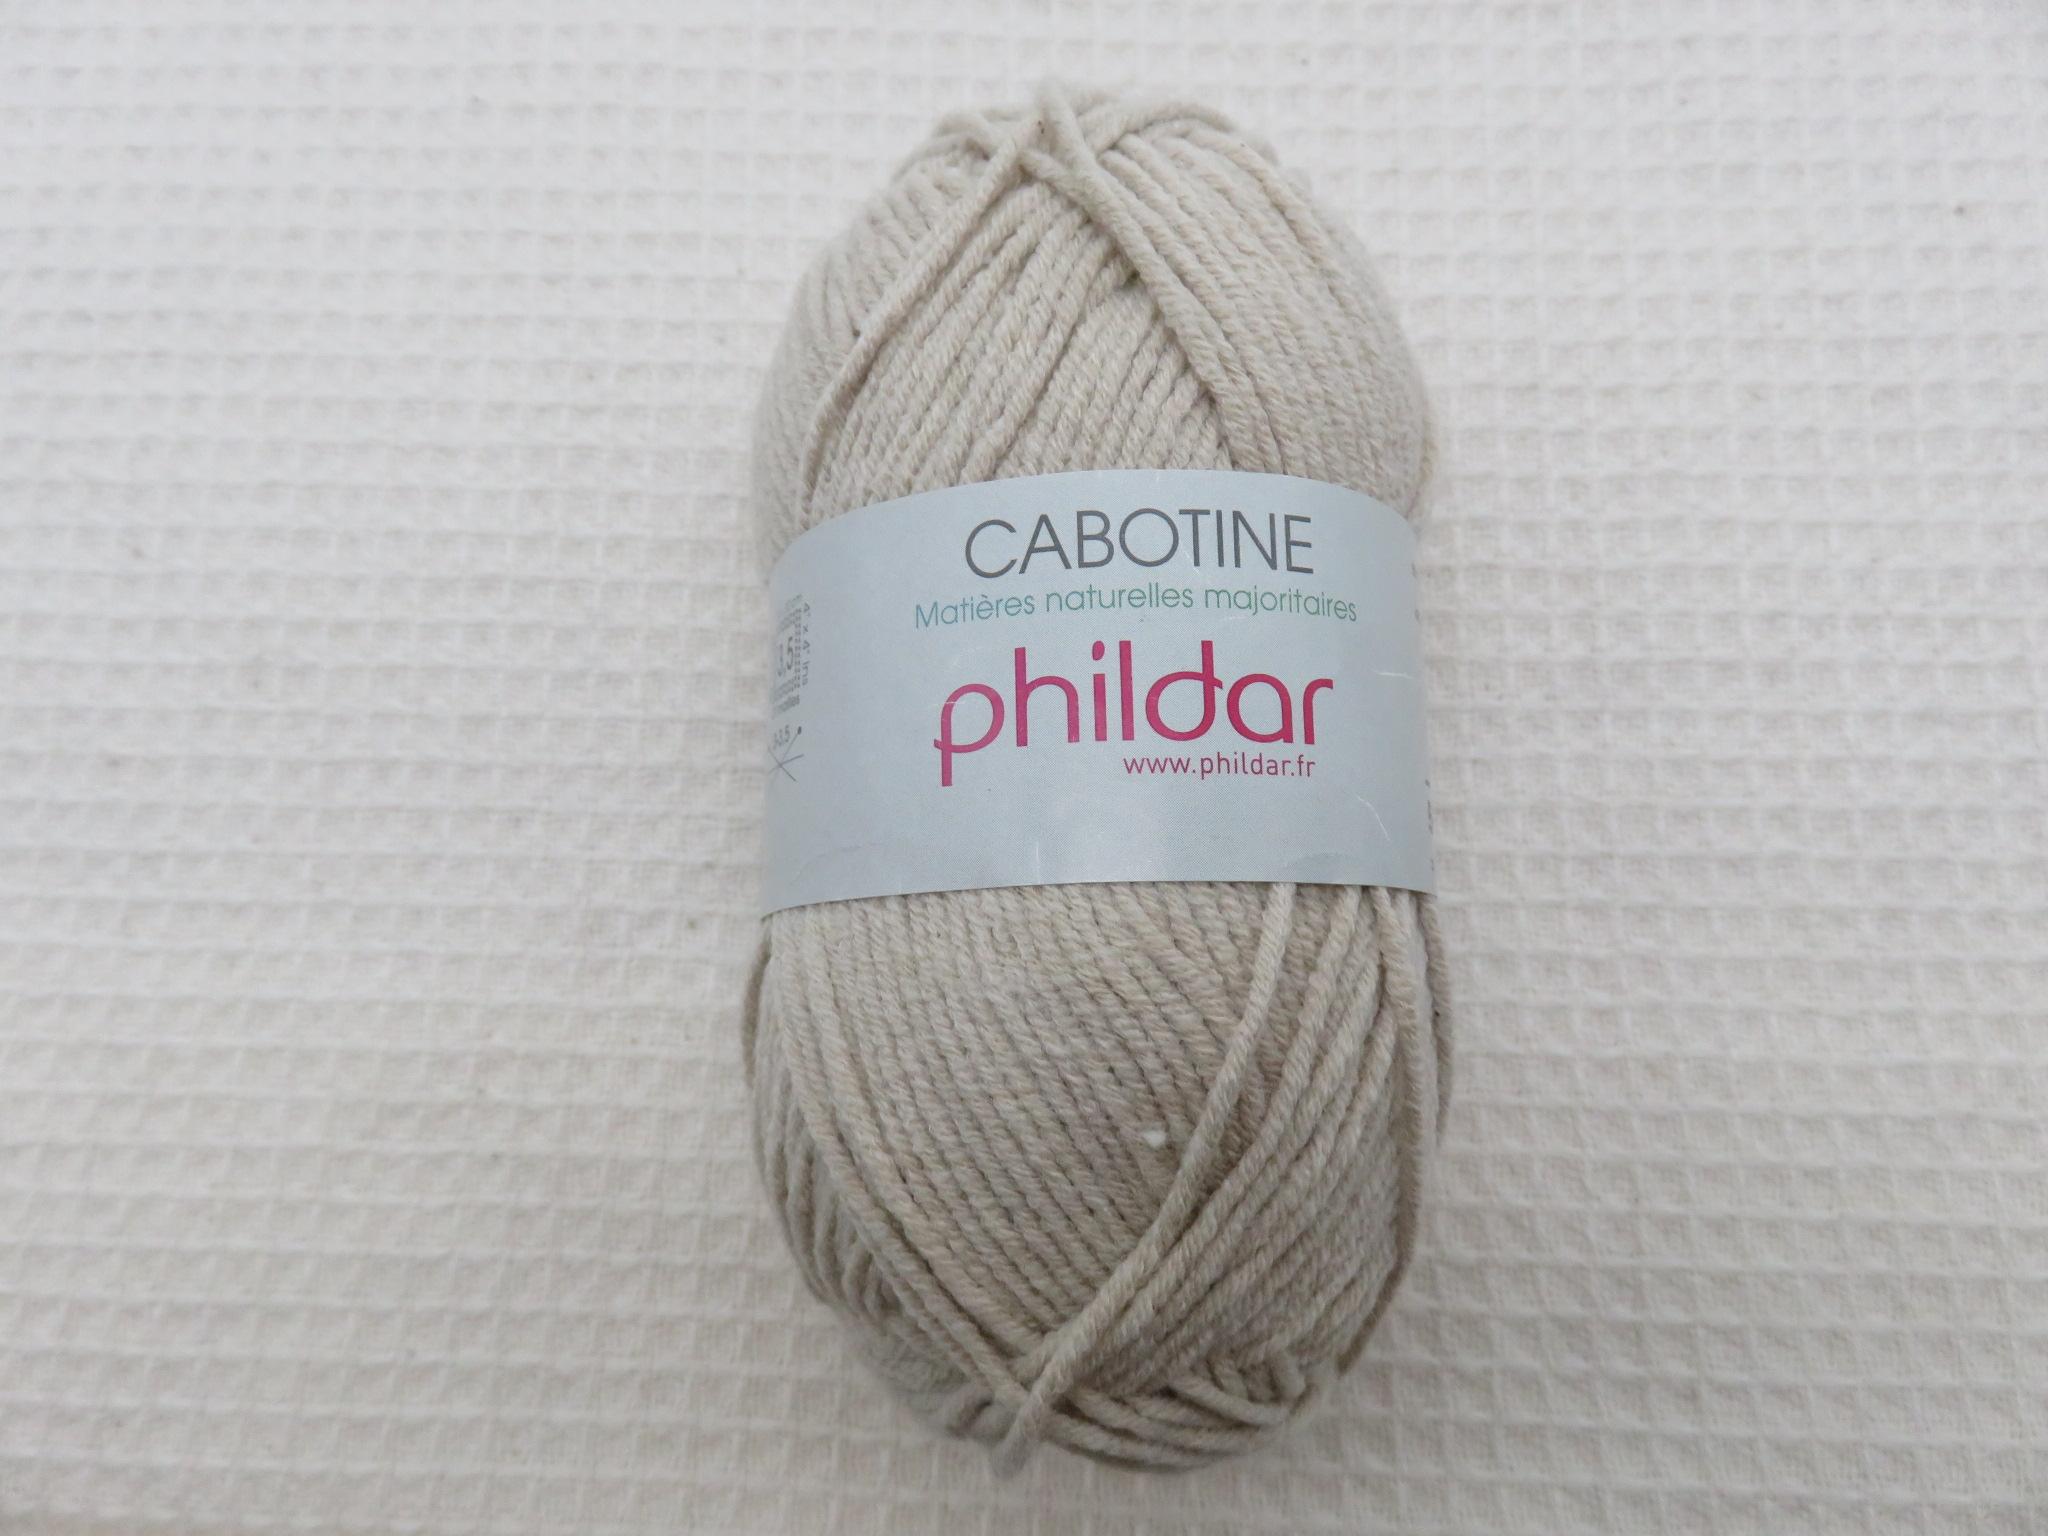 Pelote Cabotine sable Phildar coton acrylique